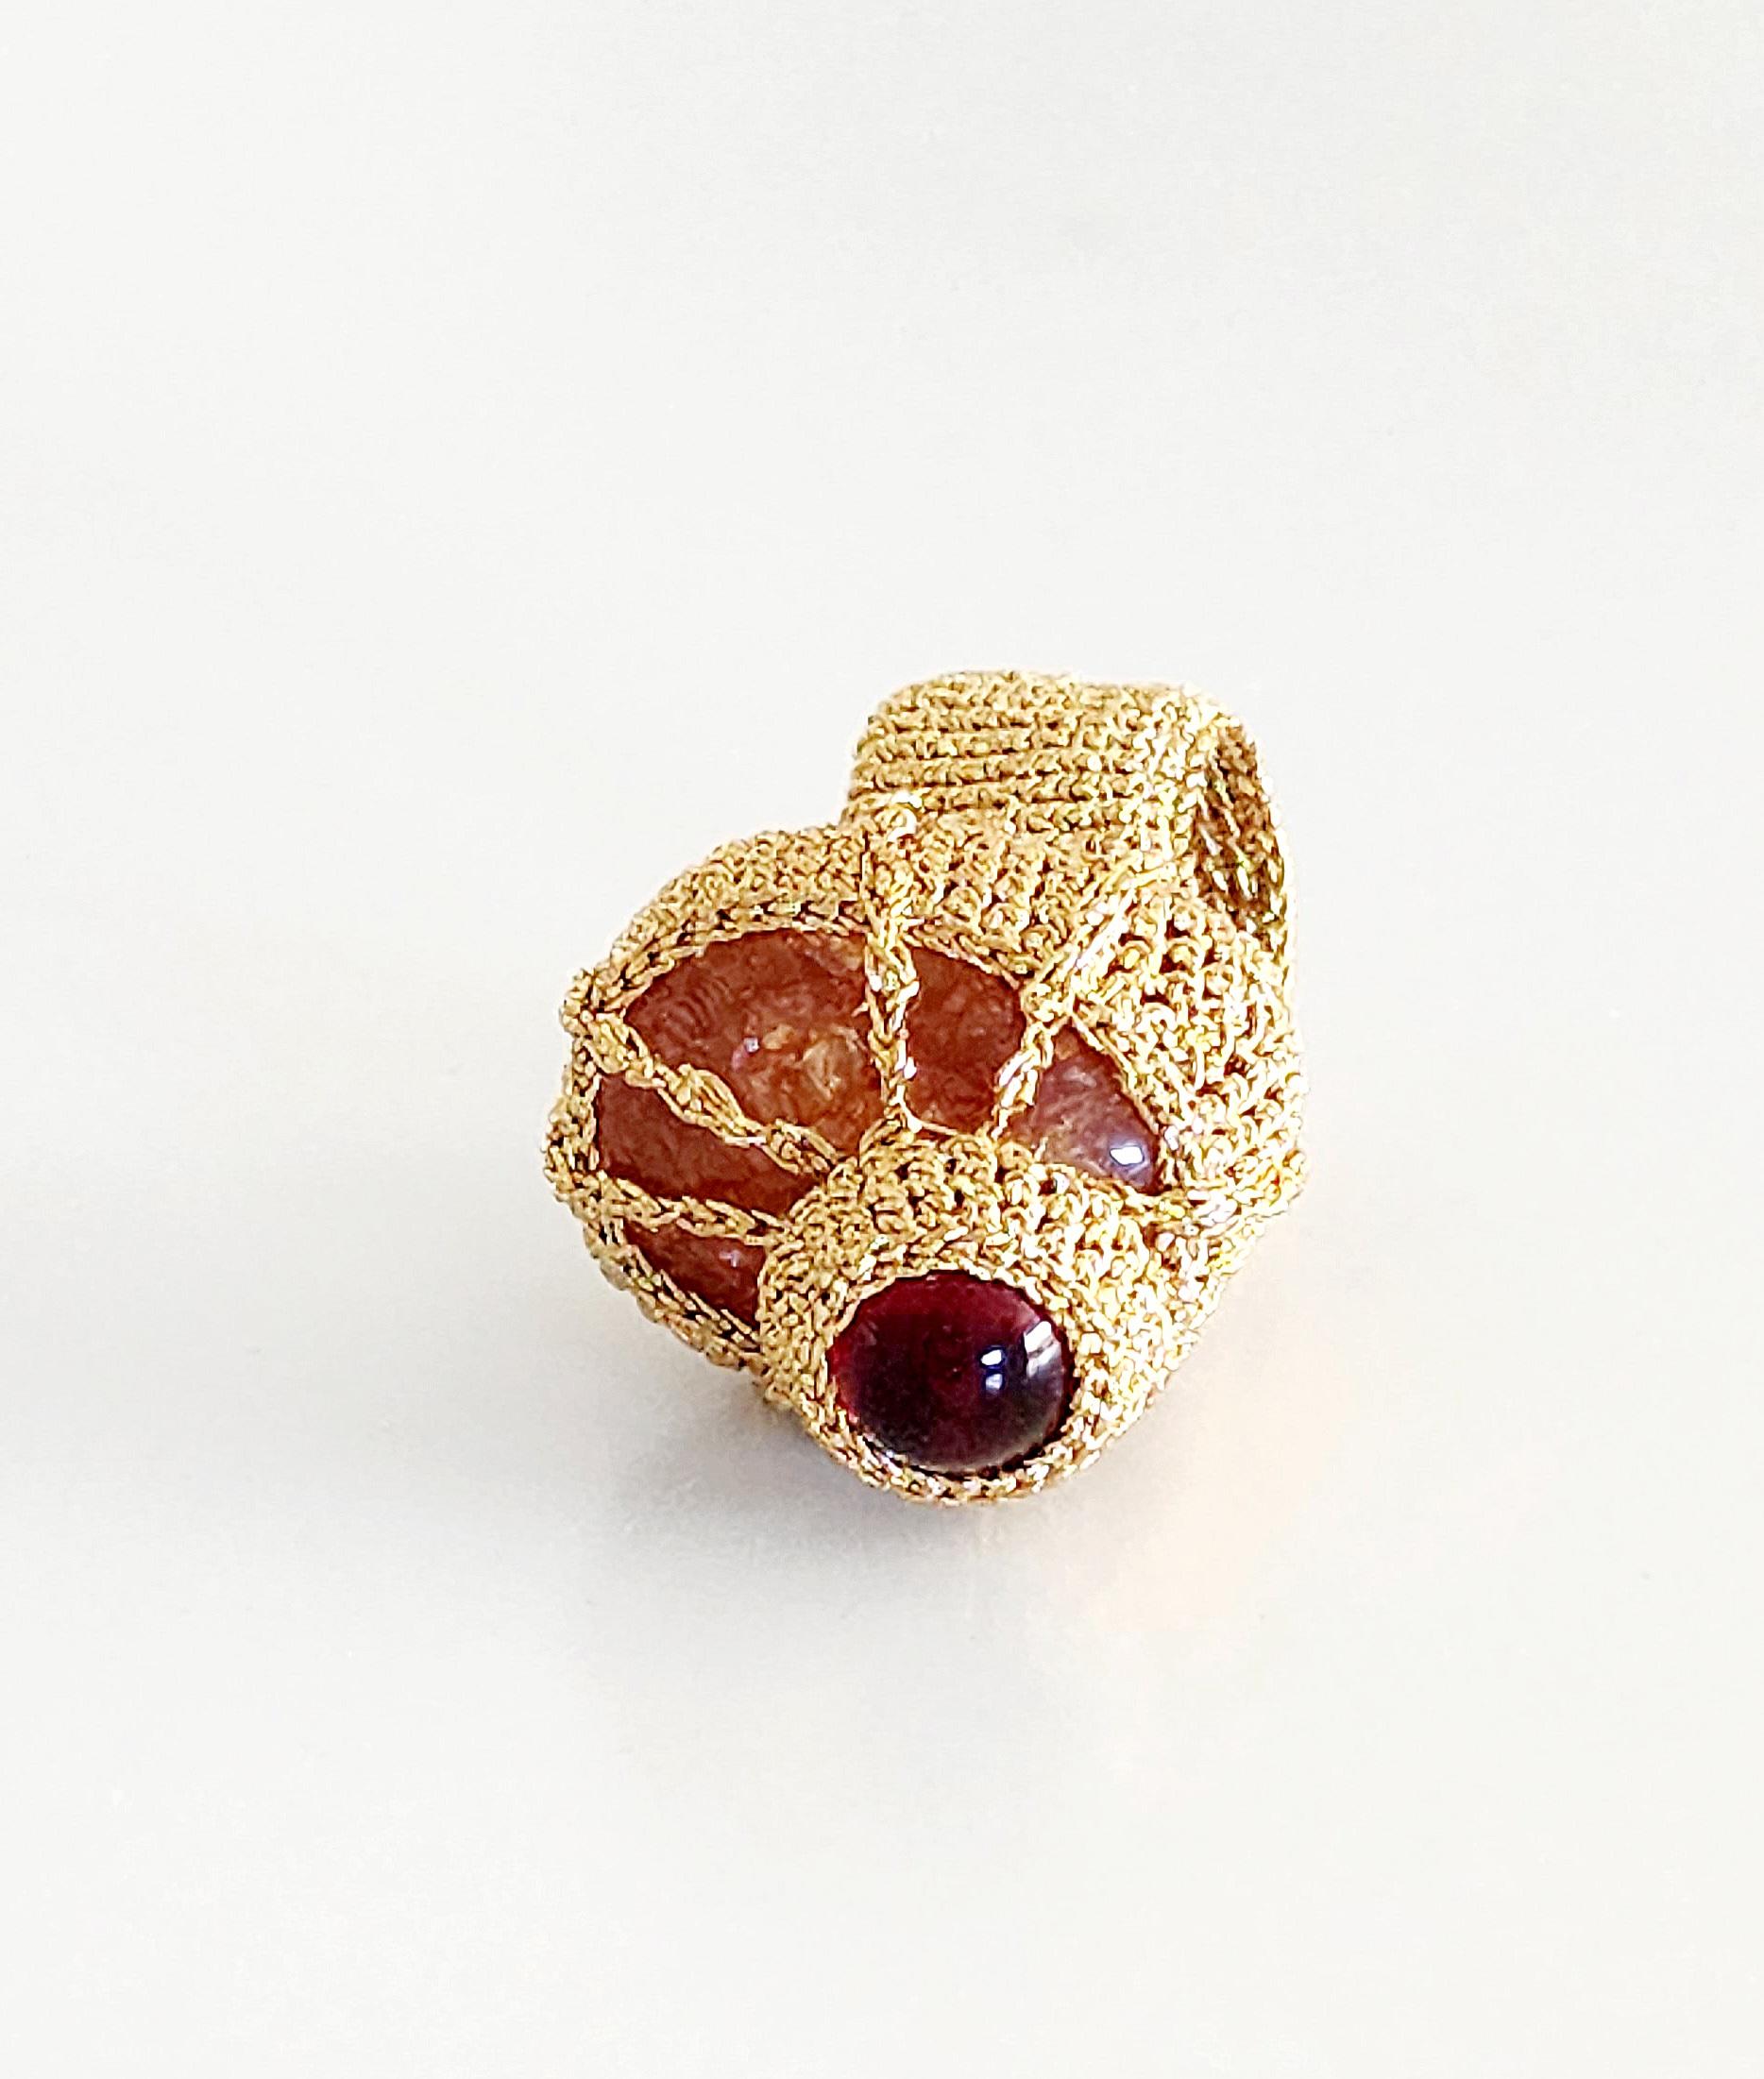 Artist Dark Golden Crochet Cocktail Ring Orange Crystal Cabochon Red Crystal For Sale